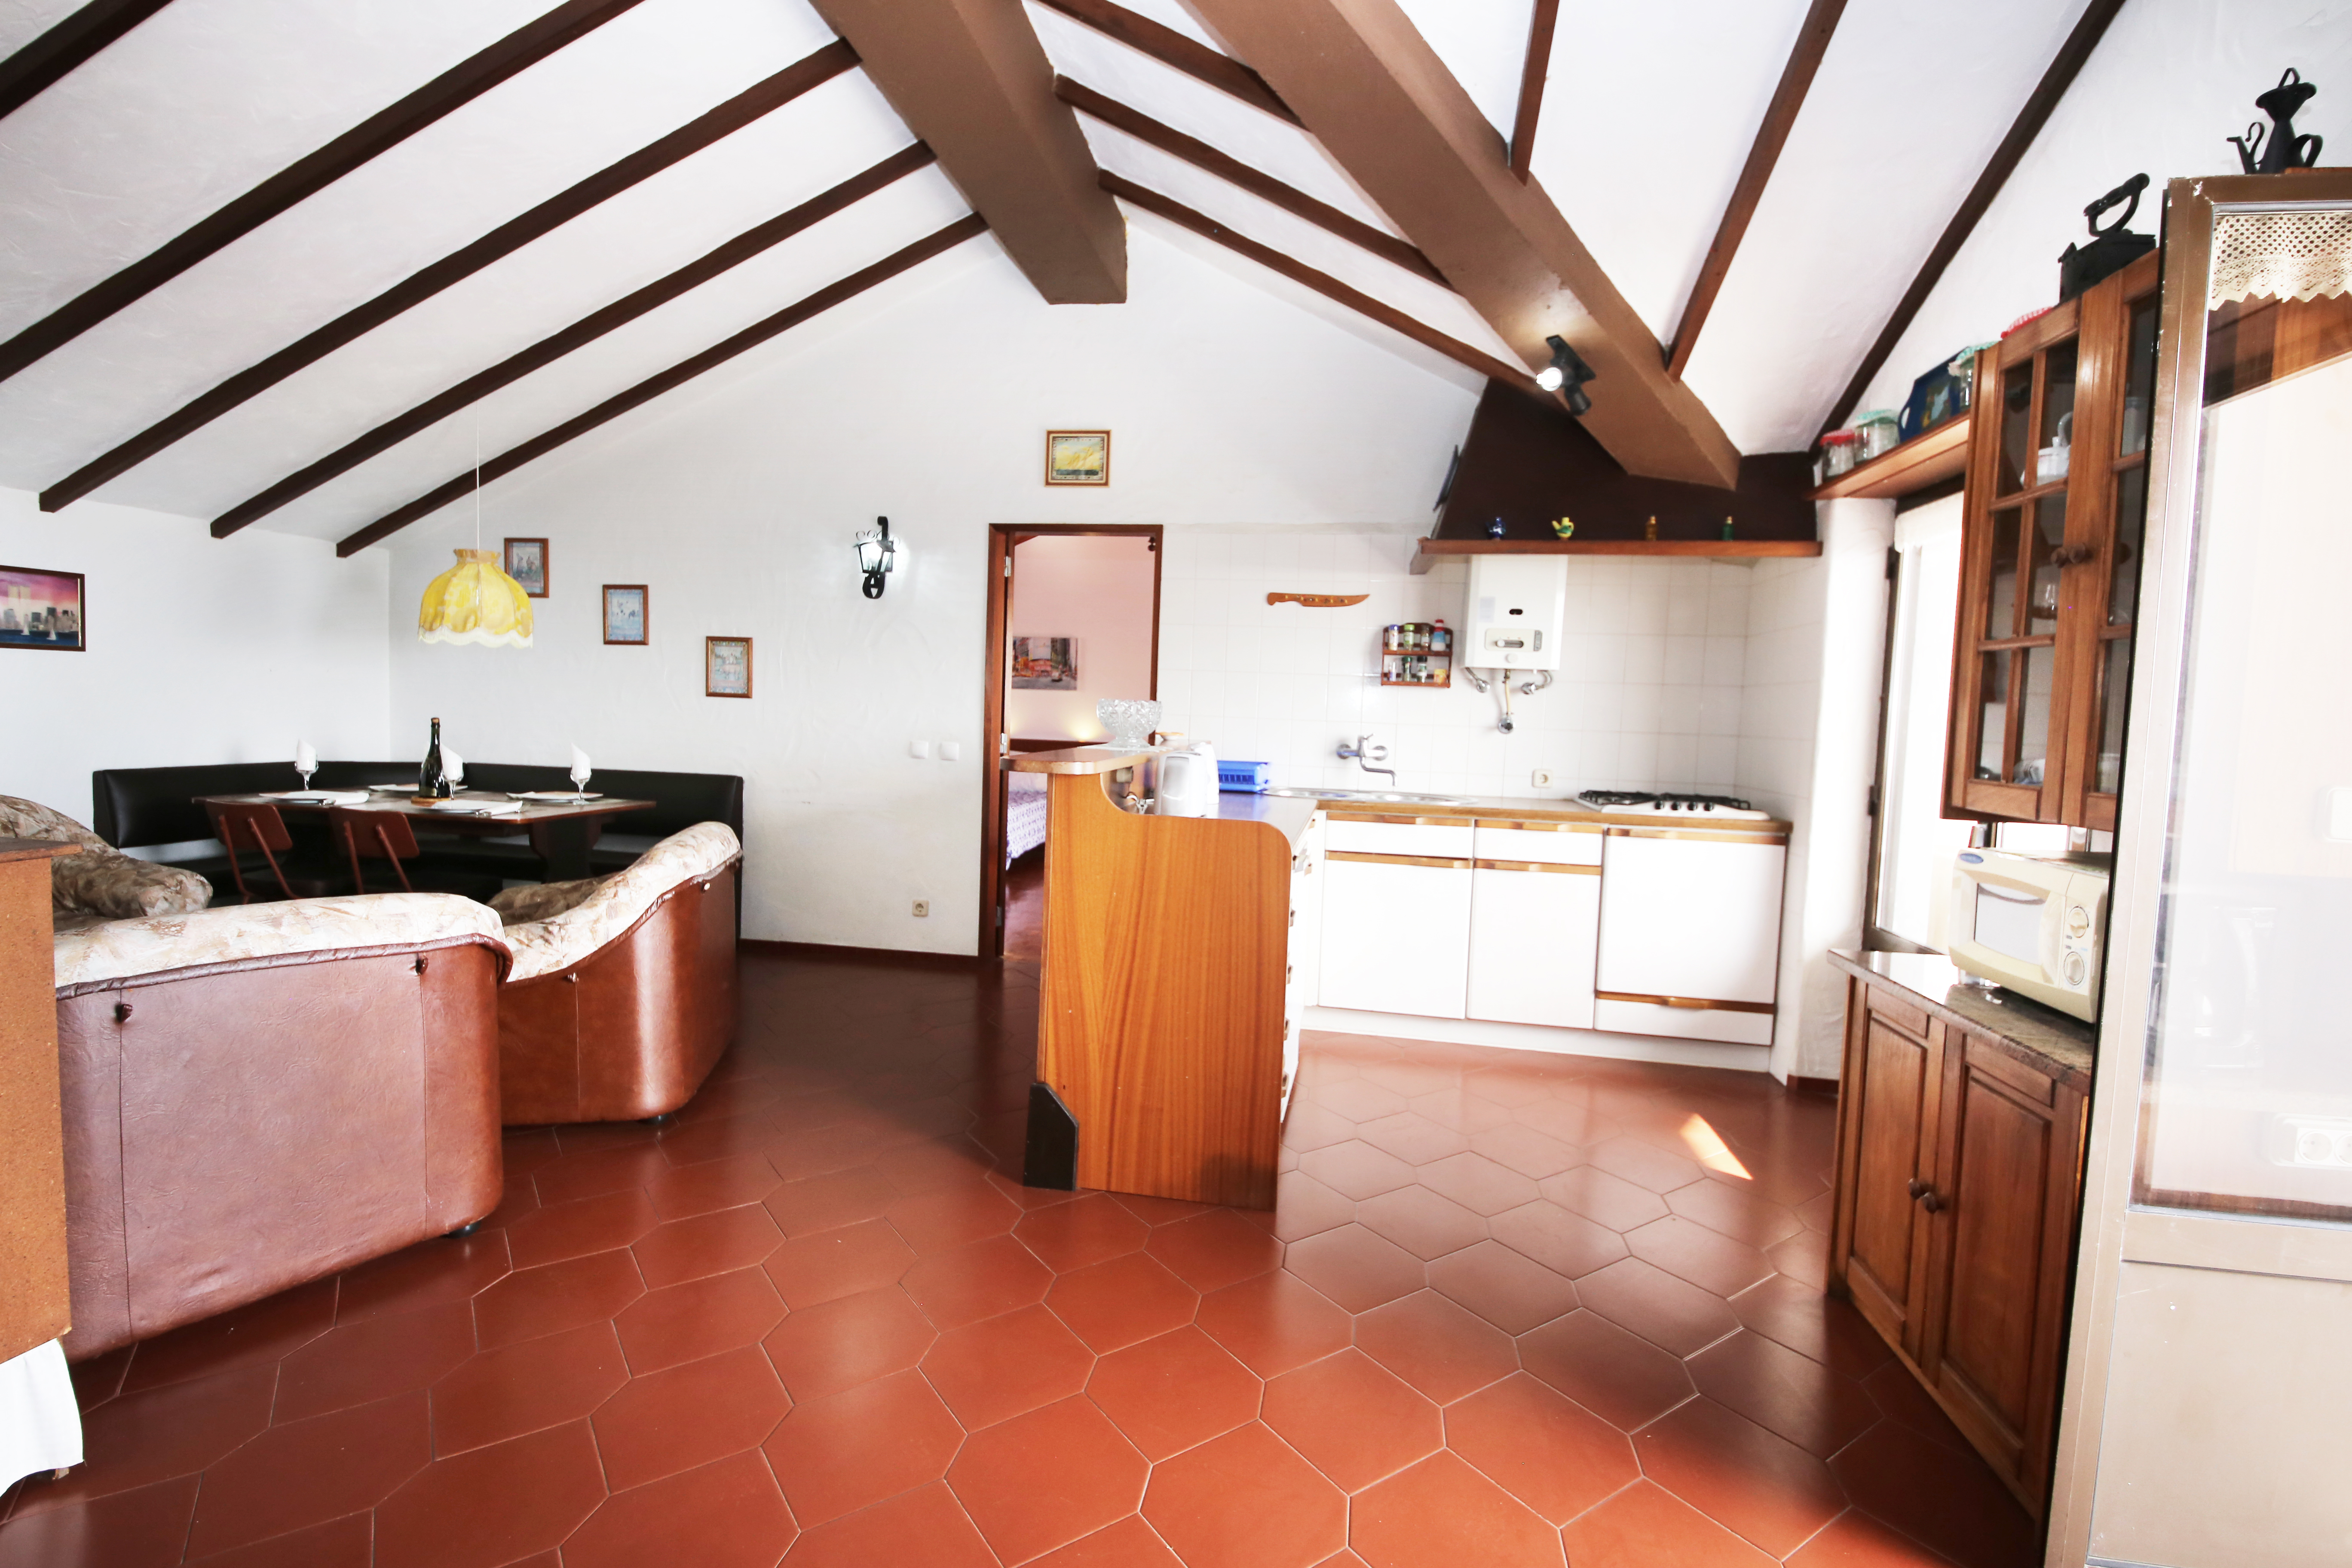 livingroom, open space kitchen